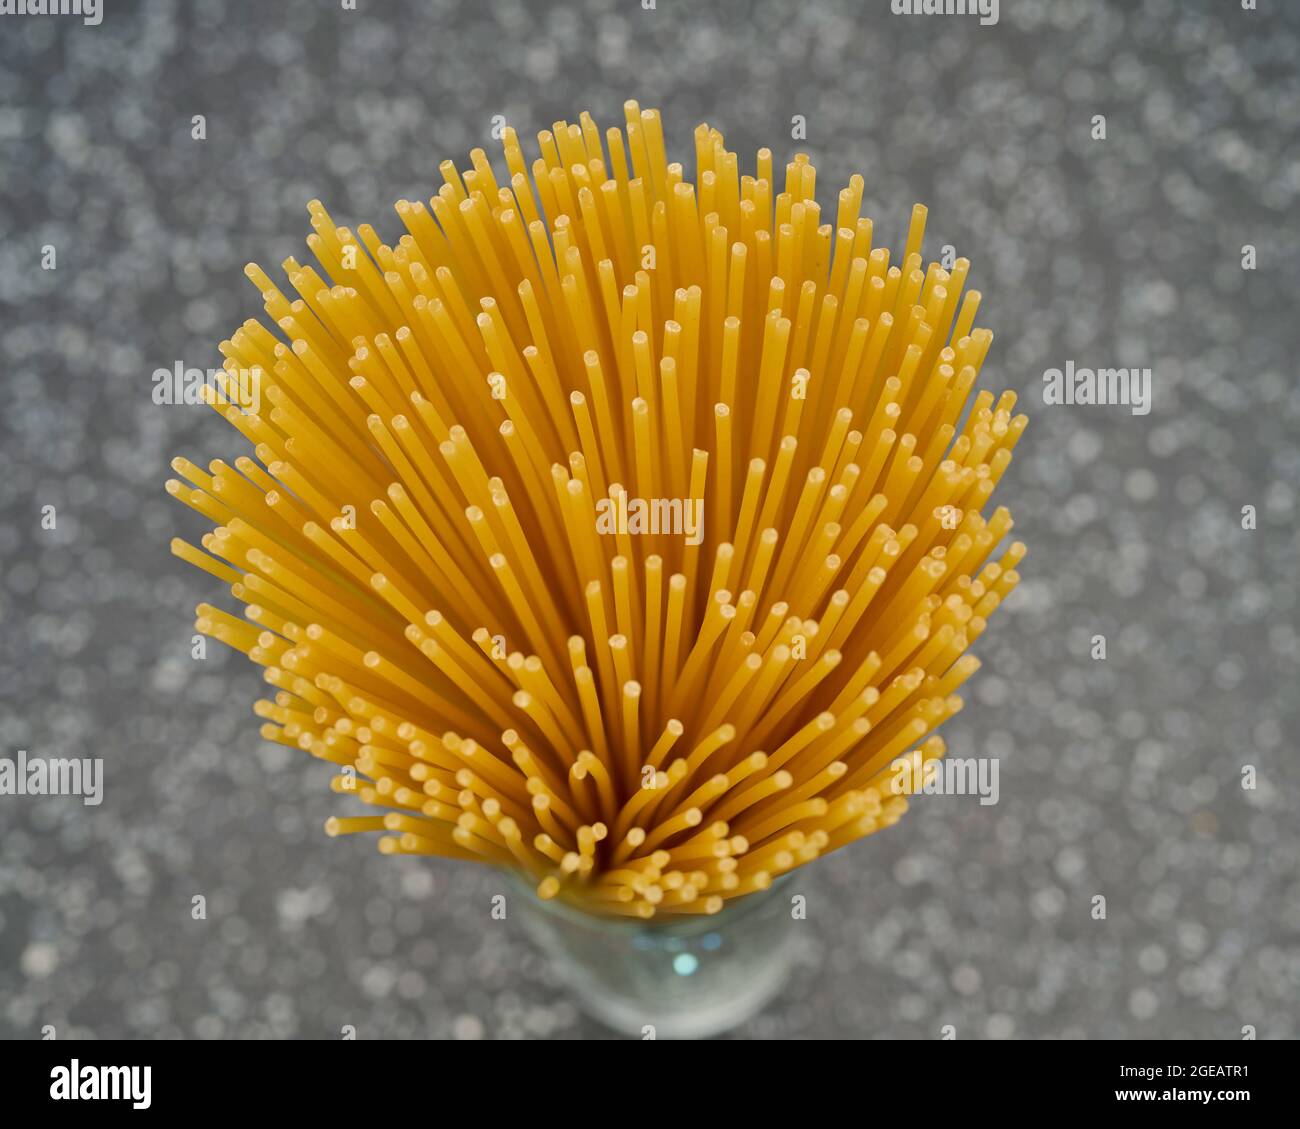 Food, Deutschland, trockene Spaghetti Nudeln stehend, von Oben fotografiert. Stock Photo